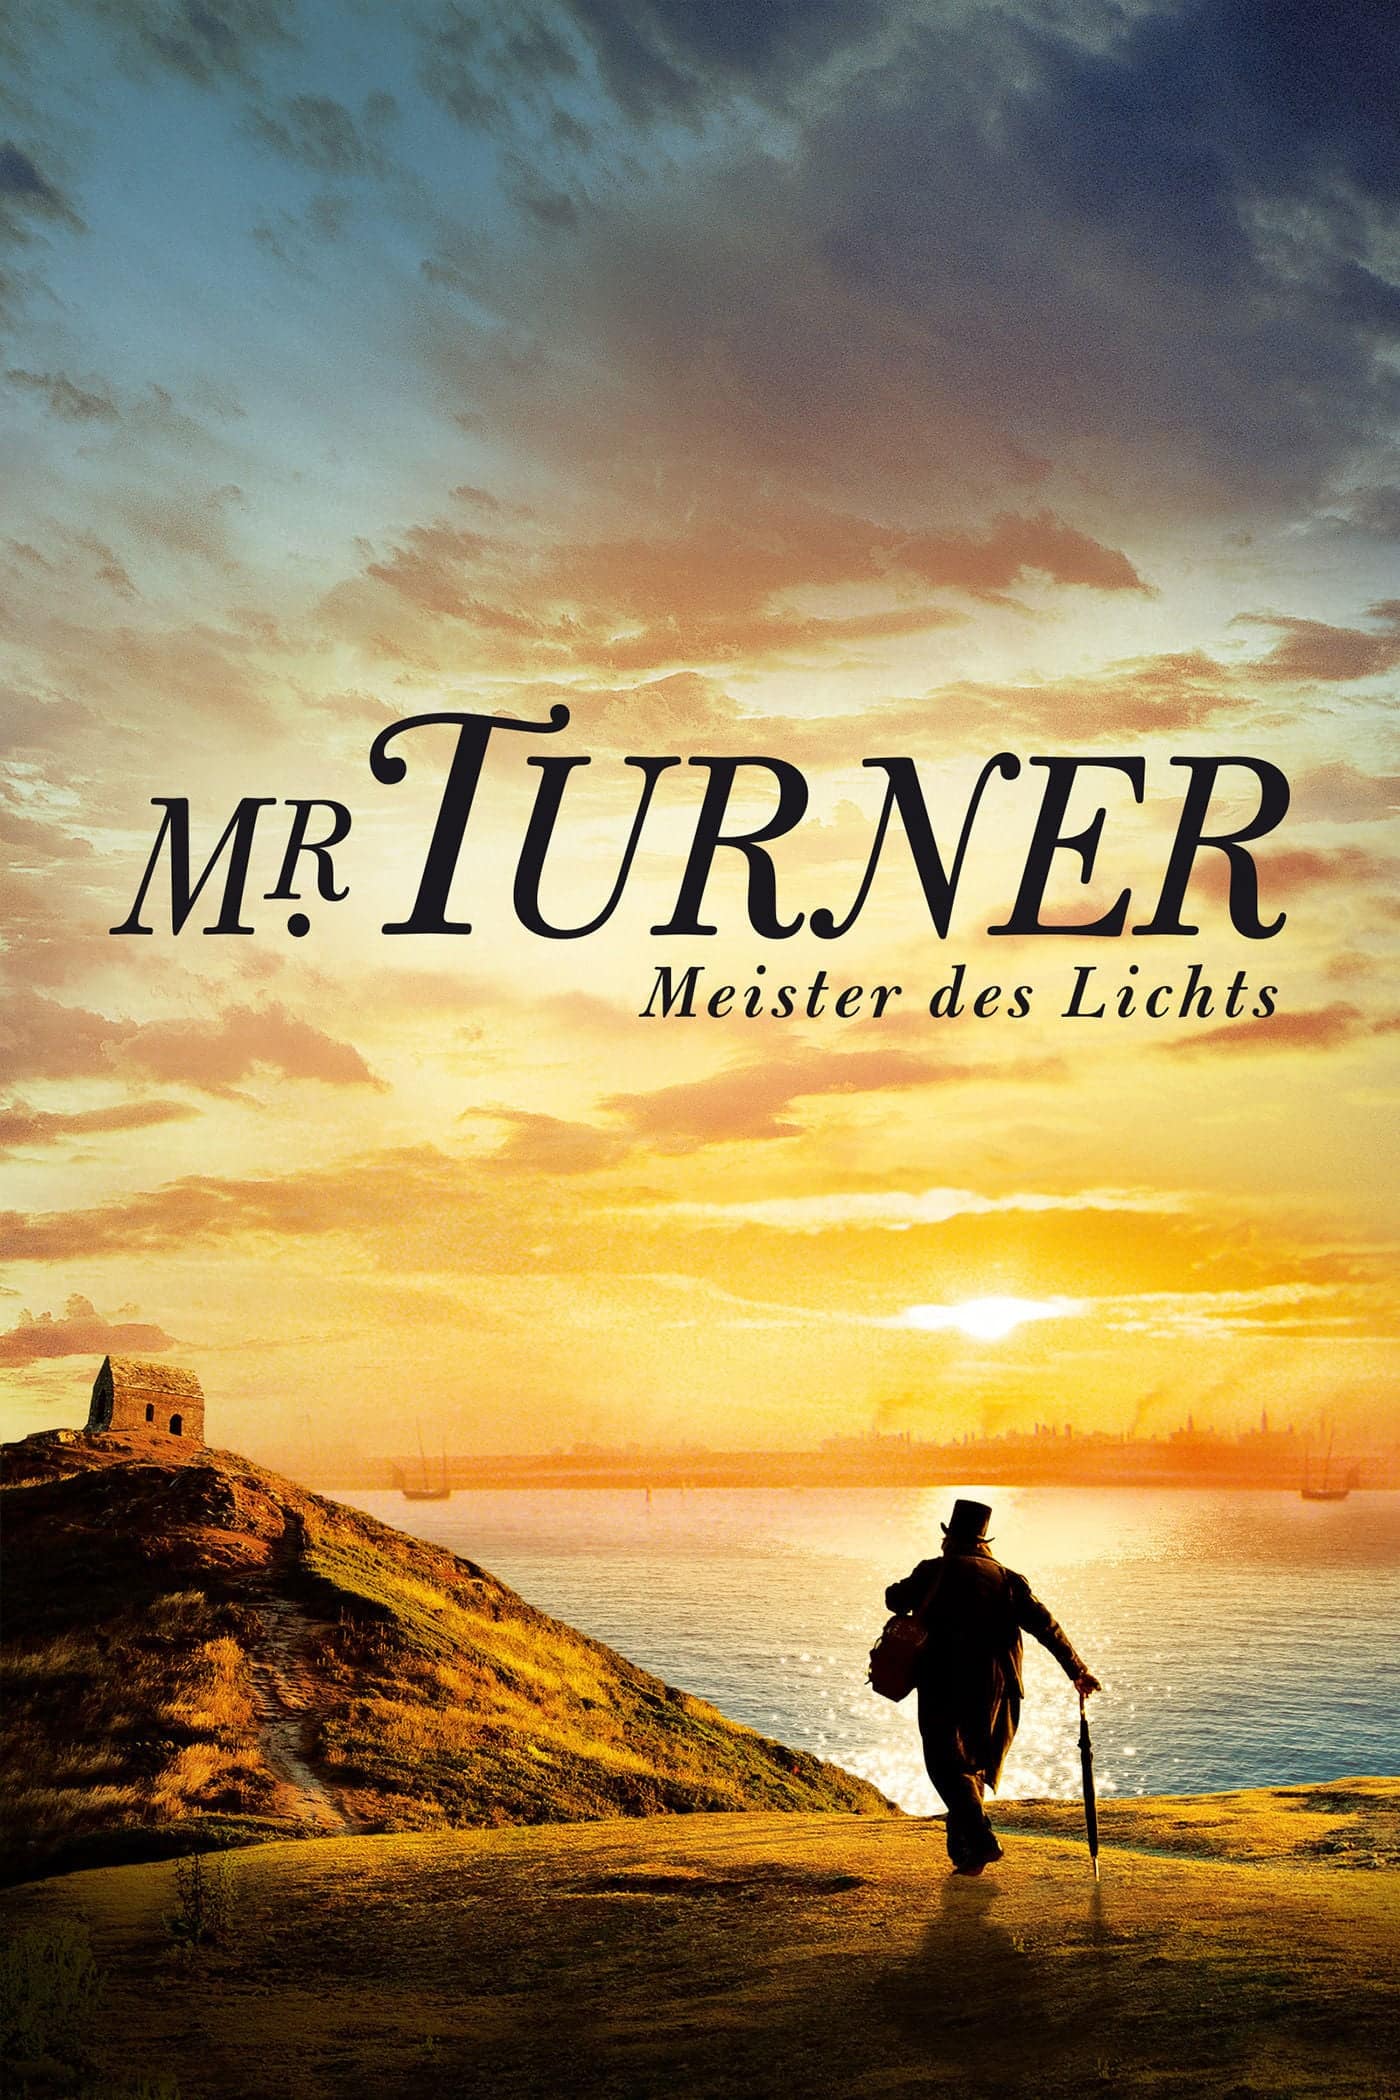 Plakat von "Mr. Turner - Meister des Lichts"